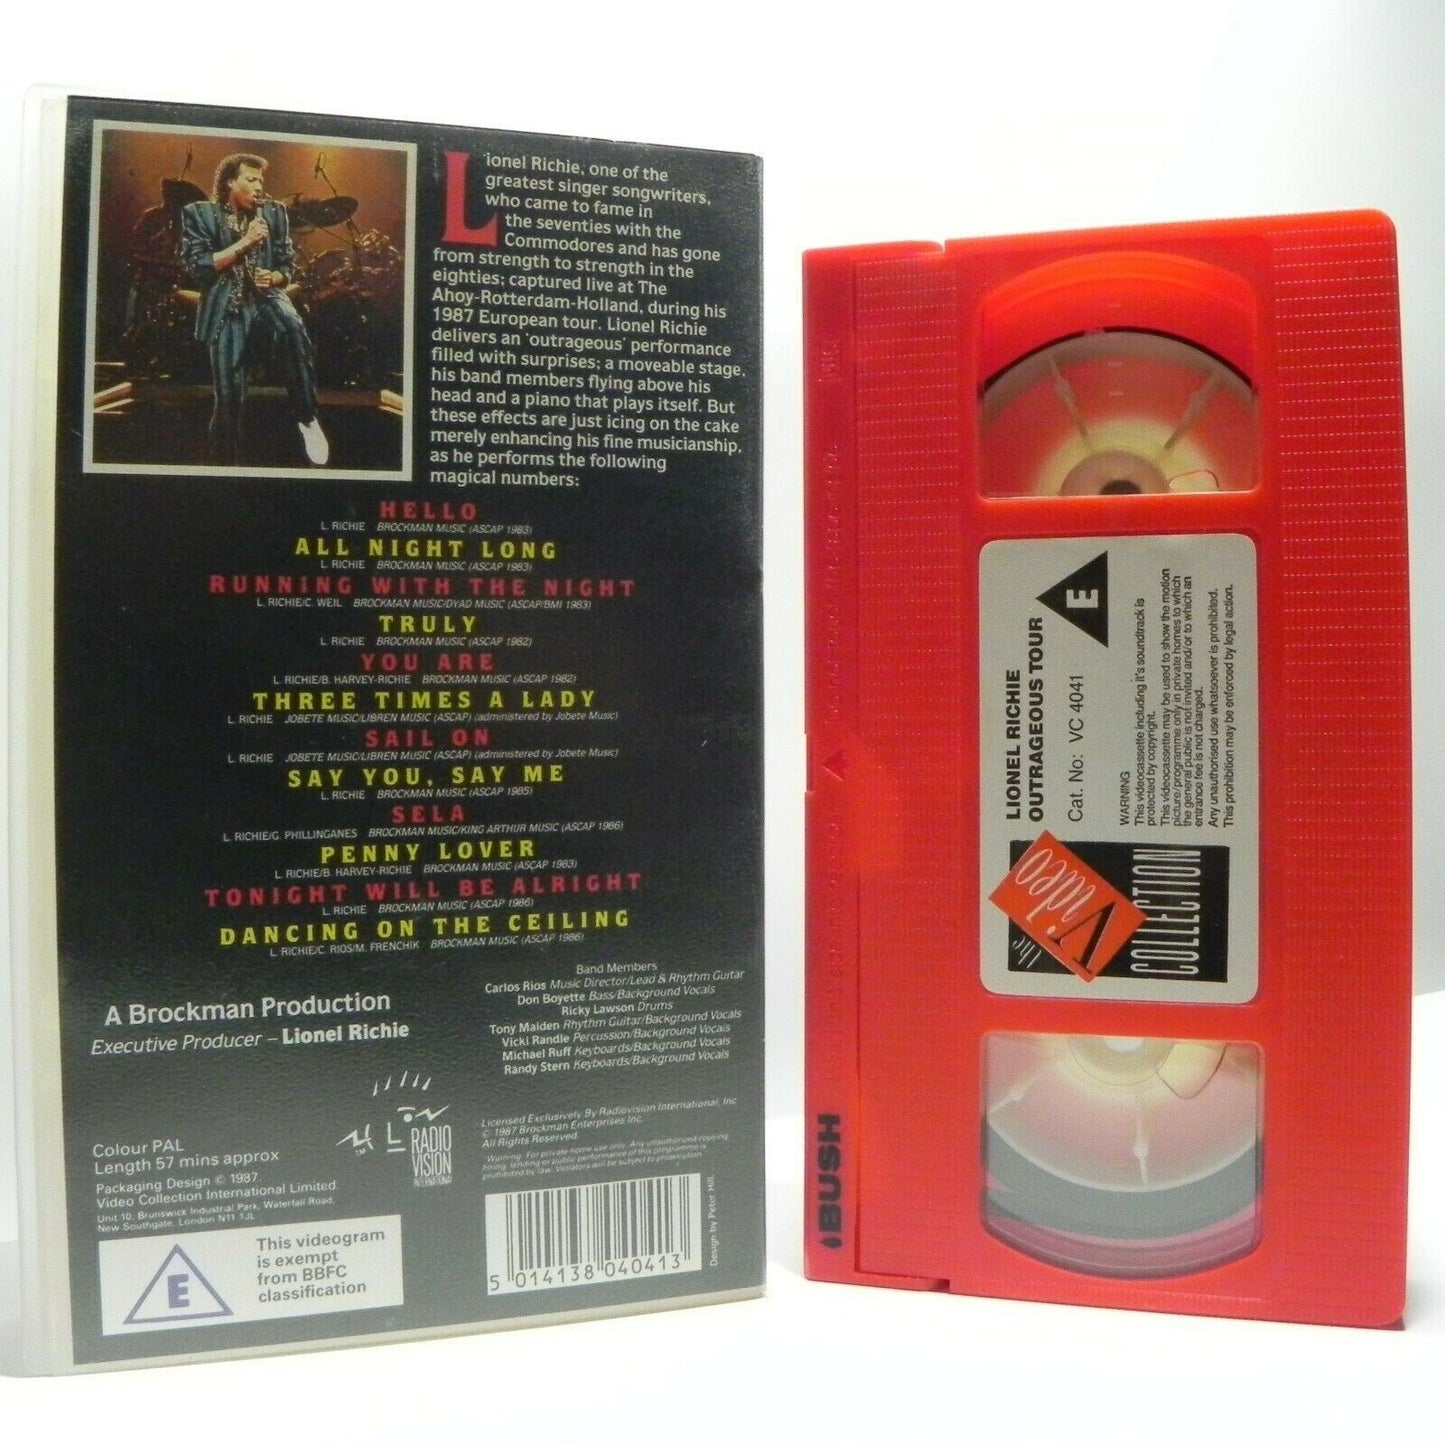 Lionel Richie Live!: The Outrageous Tour - 1987 European Tour - Music - Pal VHS-